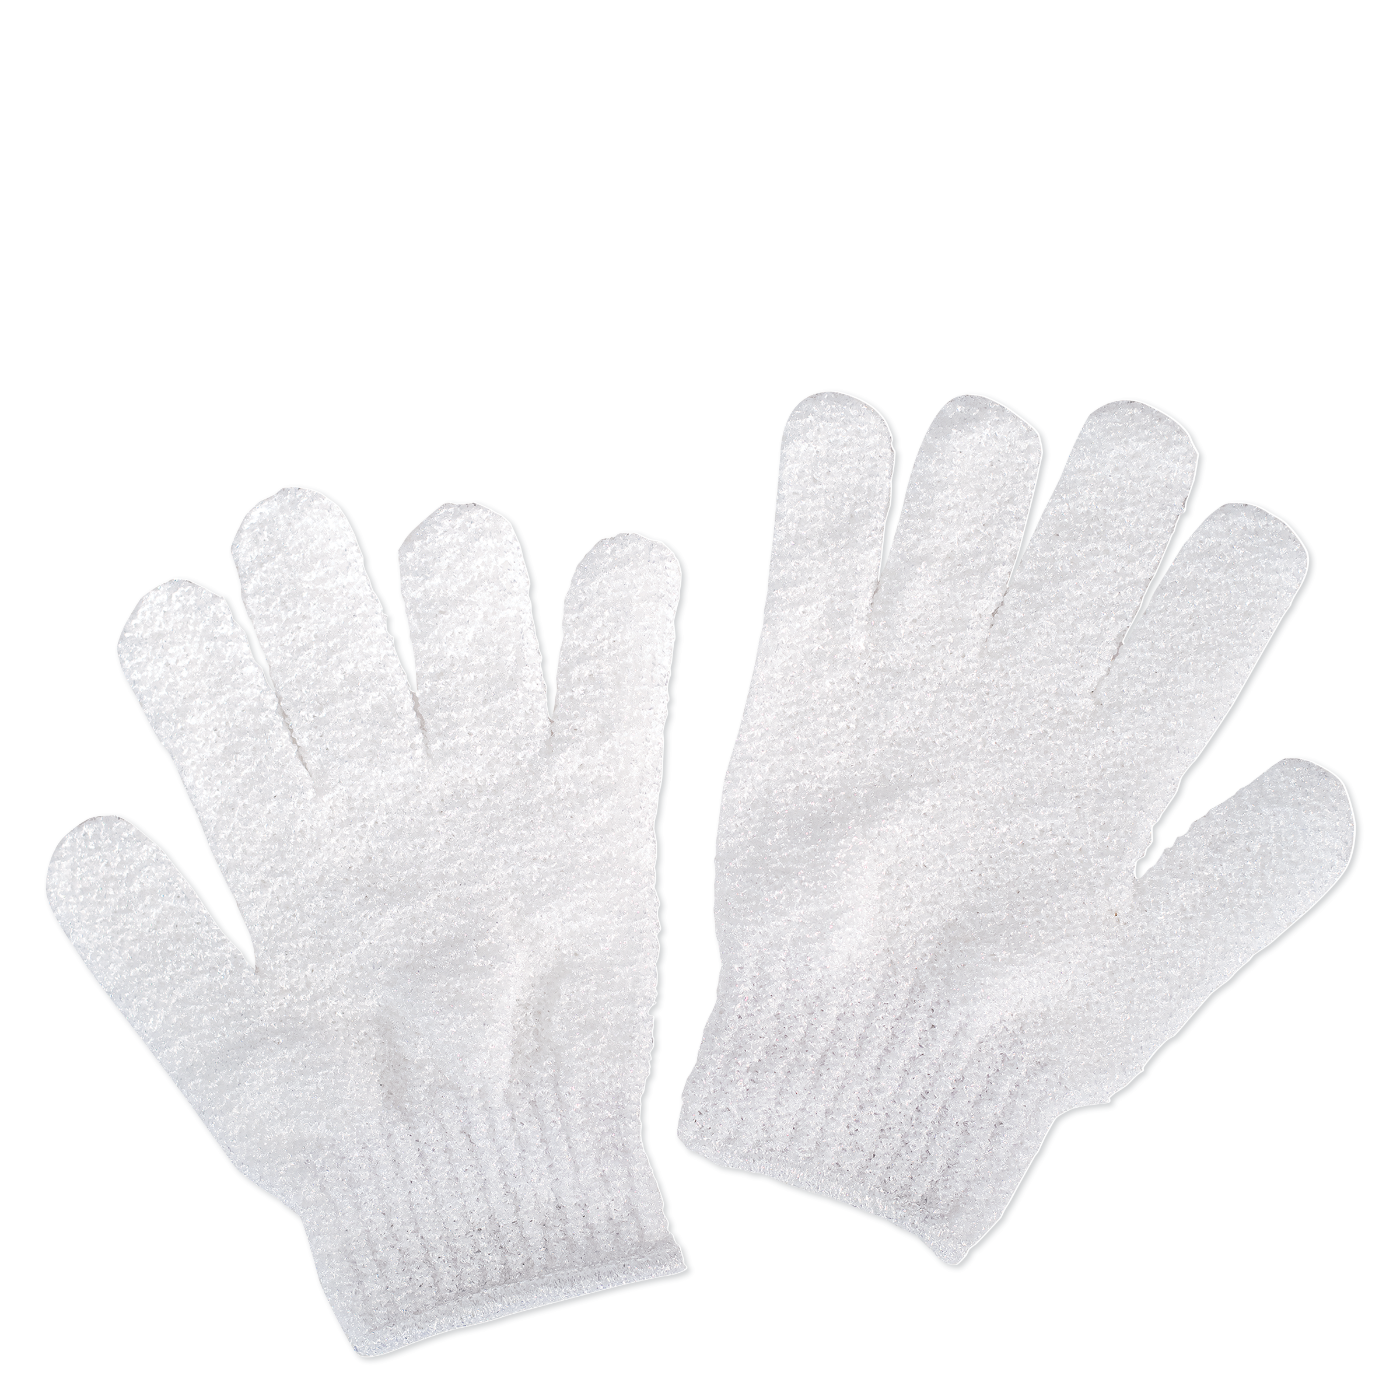 Exfoliating Gloves - 1 pair